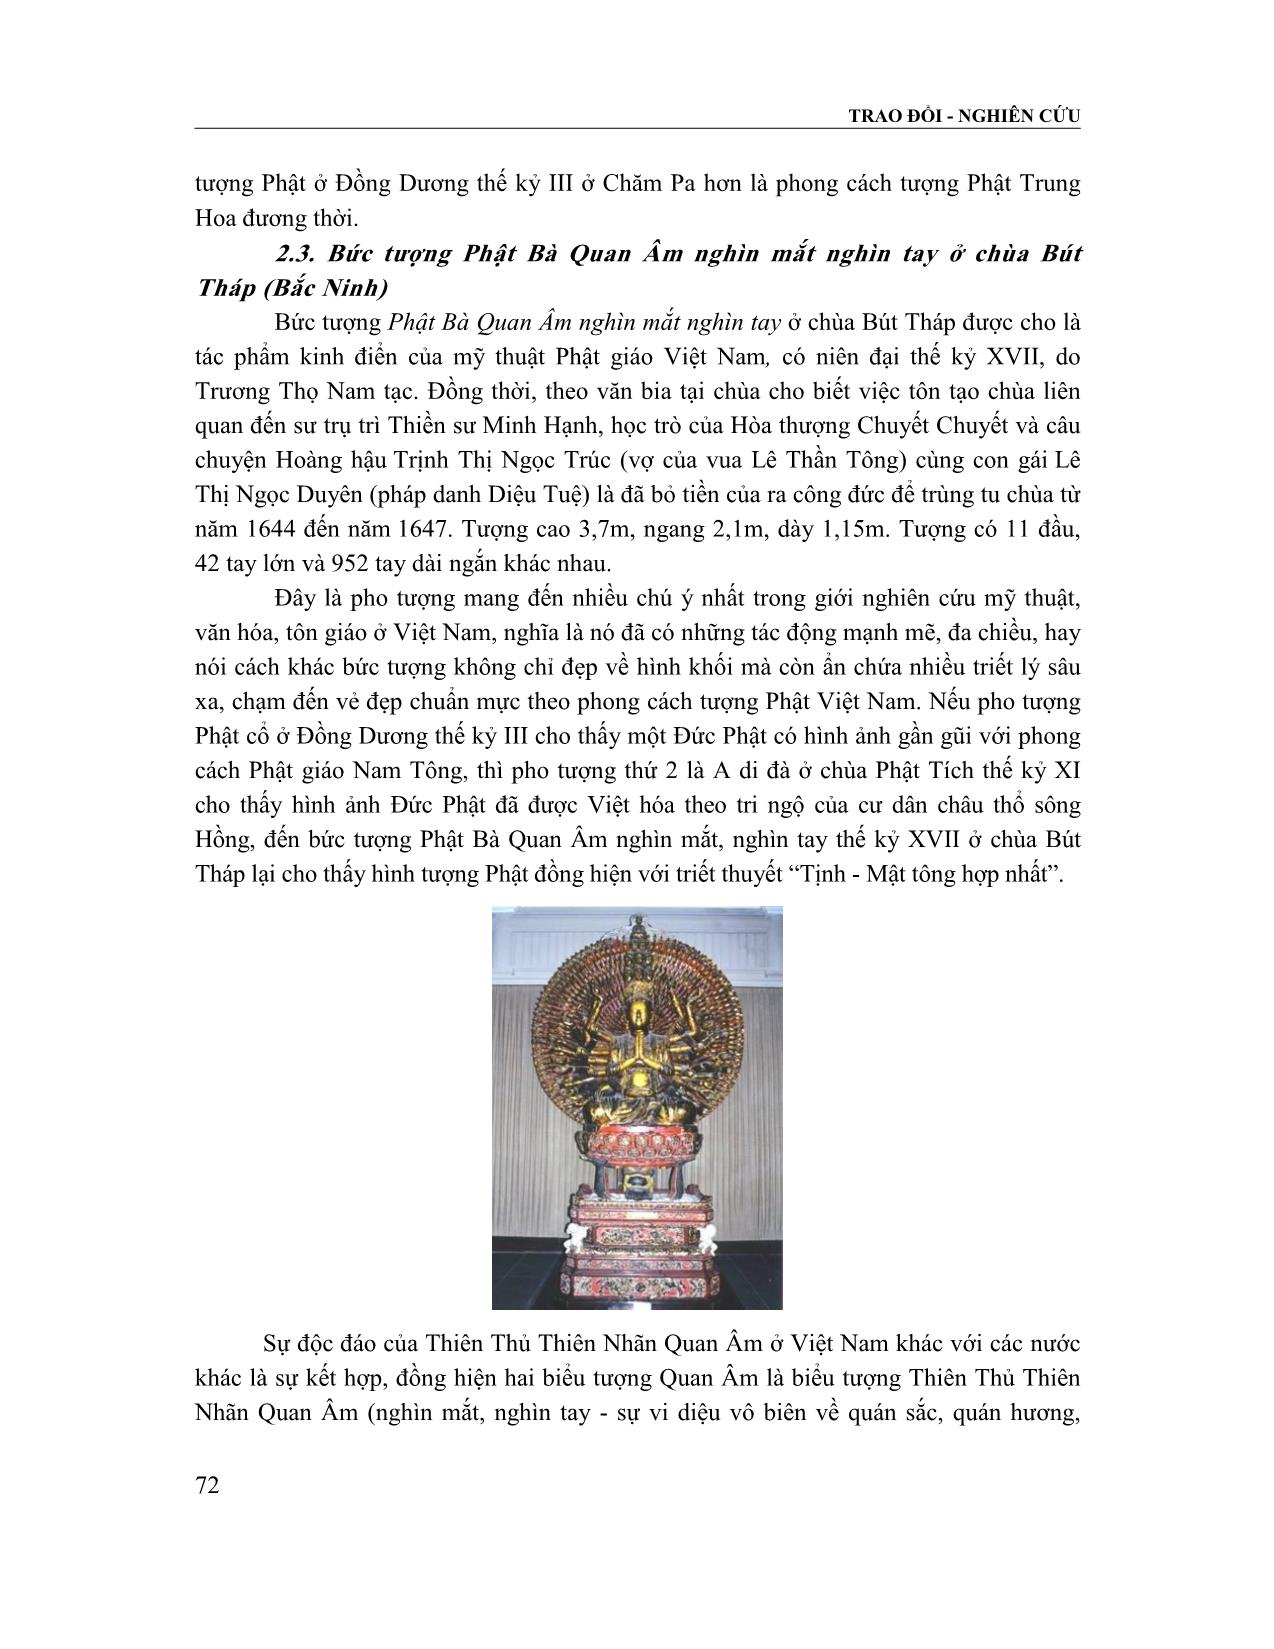 Nghiệm về vẻ đẹp trong tạo tác các pho tượng Phật điển hình ở Việt Nam trang 5